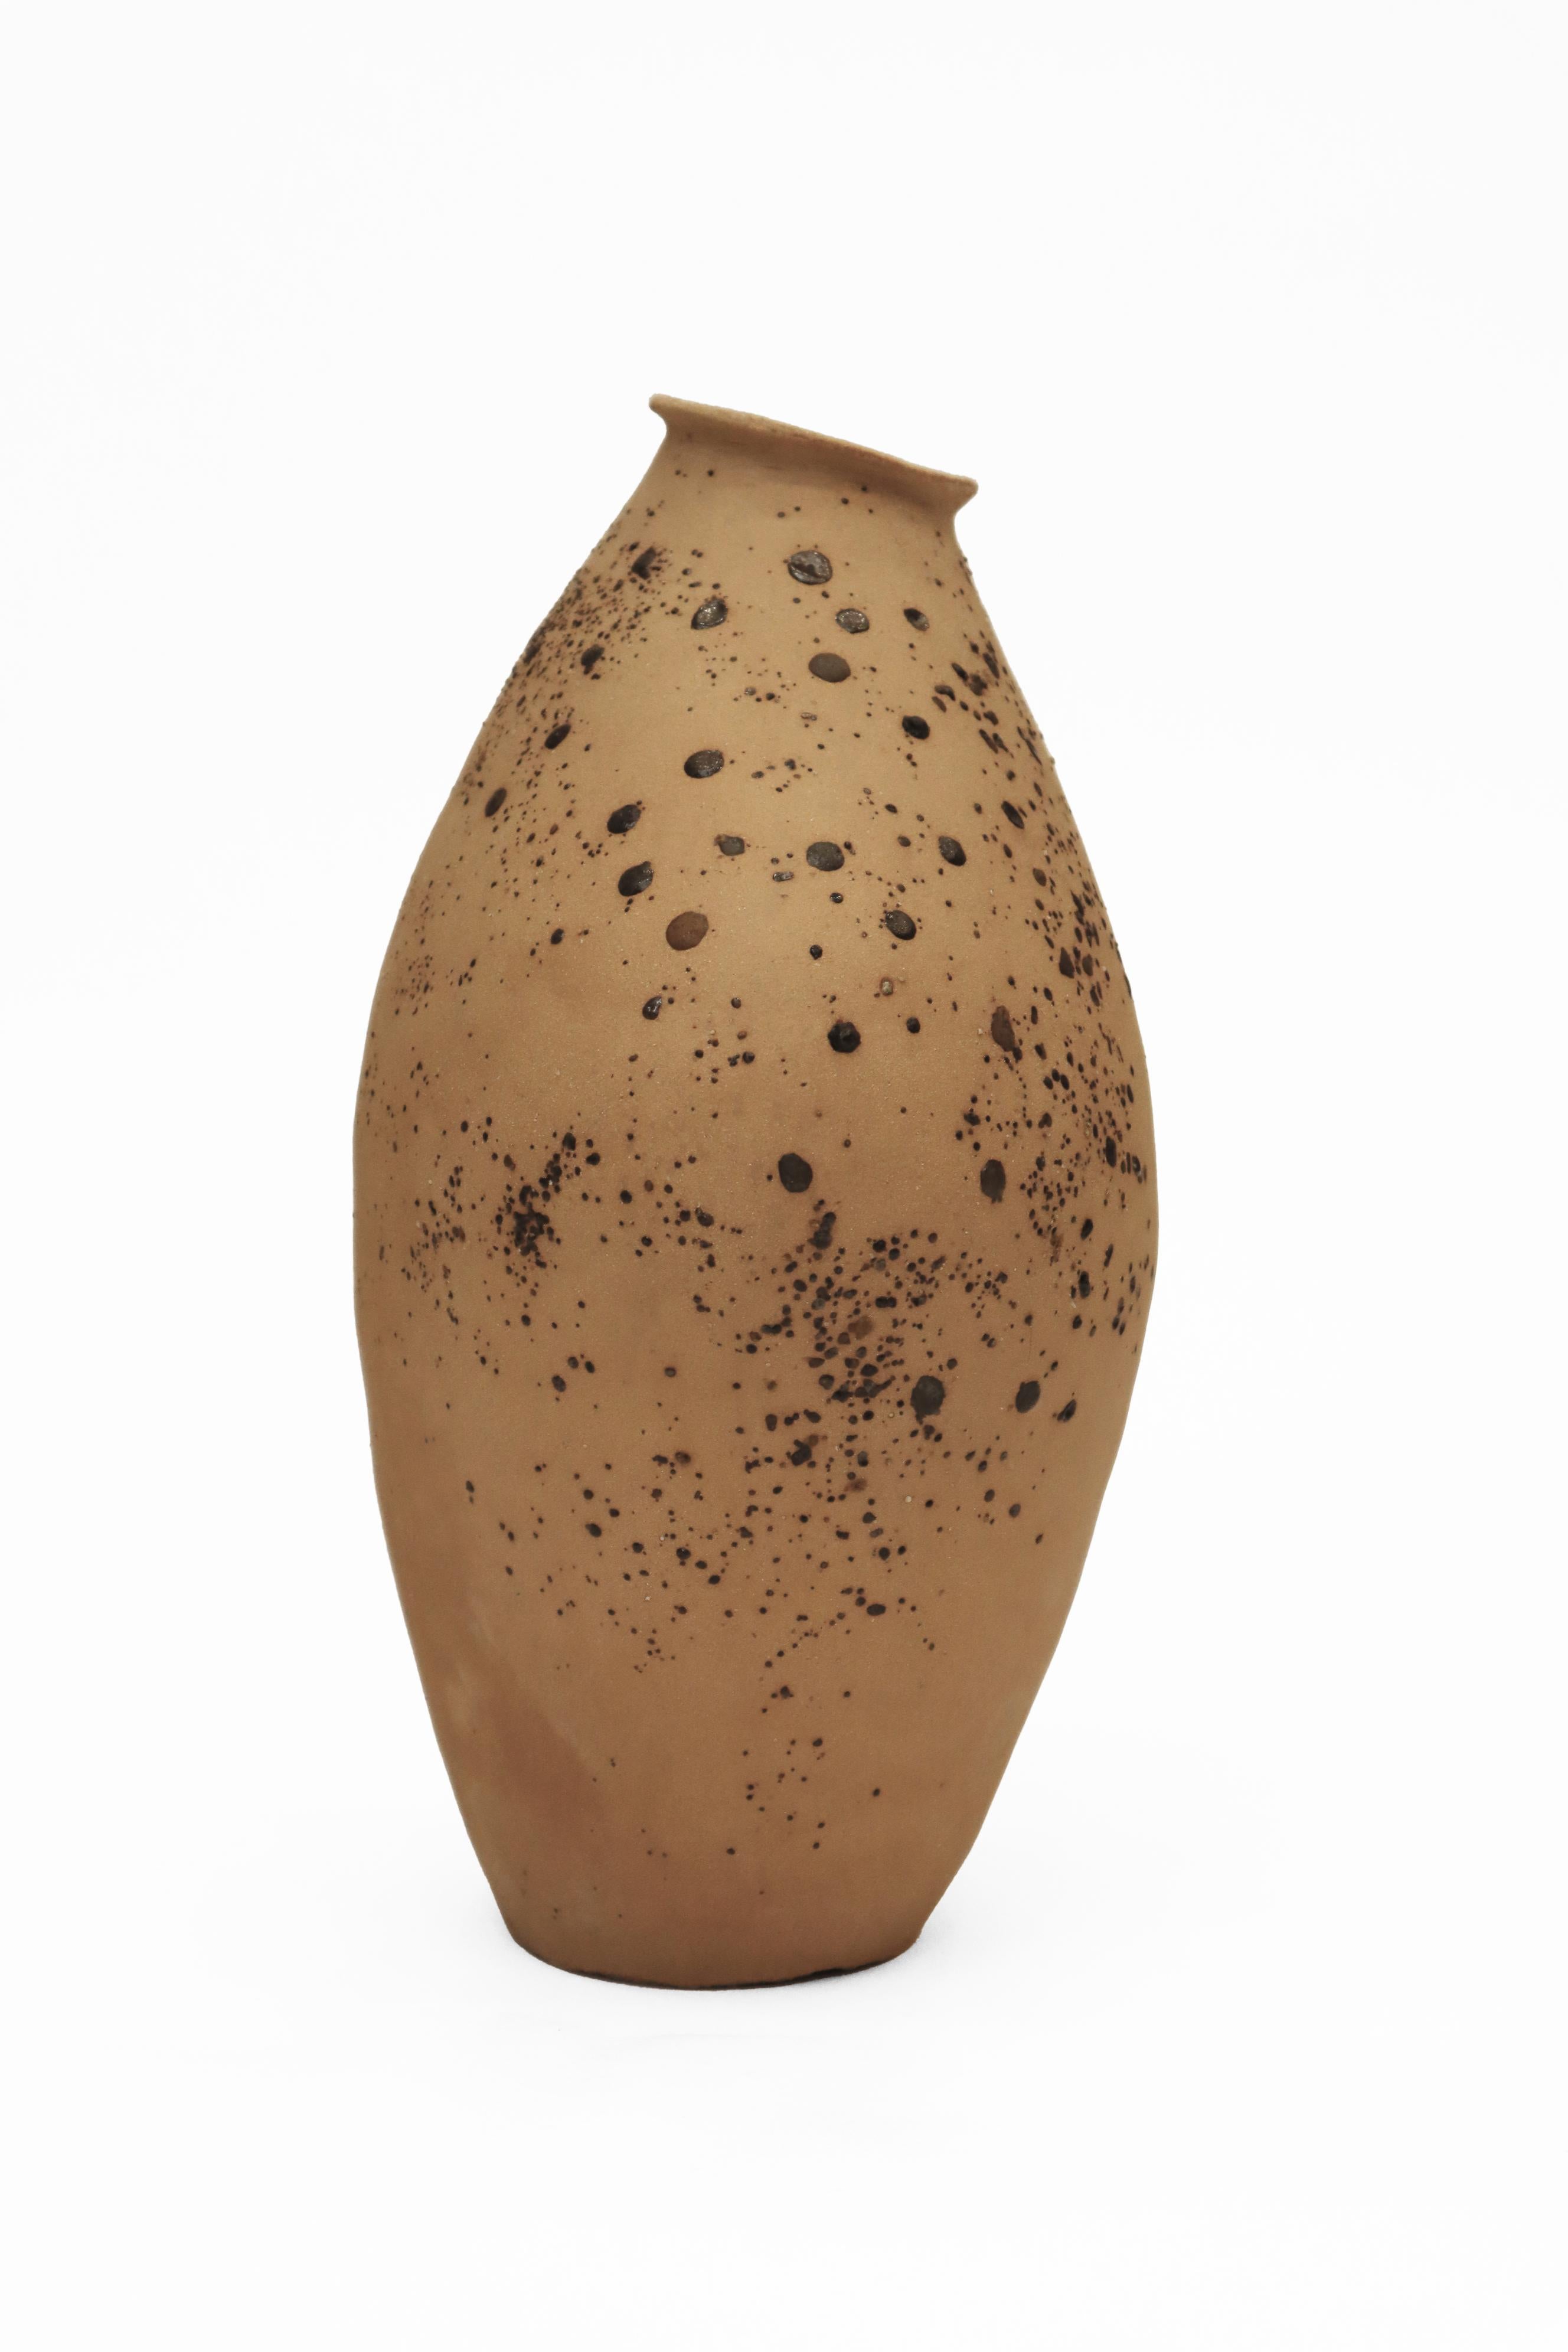 Other Stomata 8 Vase by Anna Karountzou For Sale